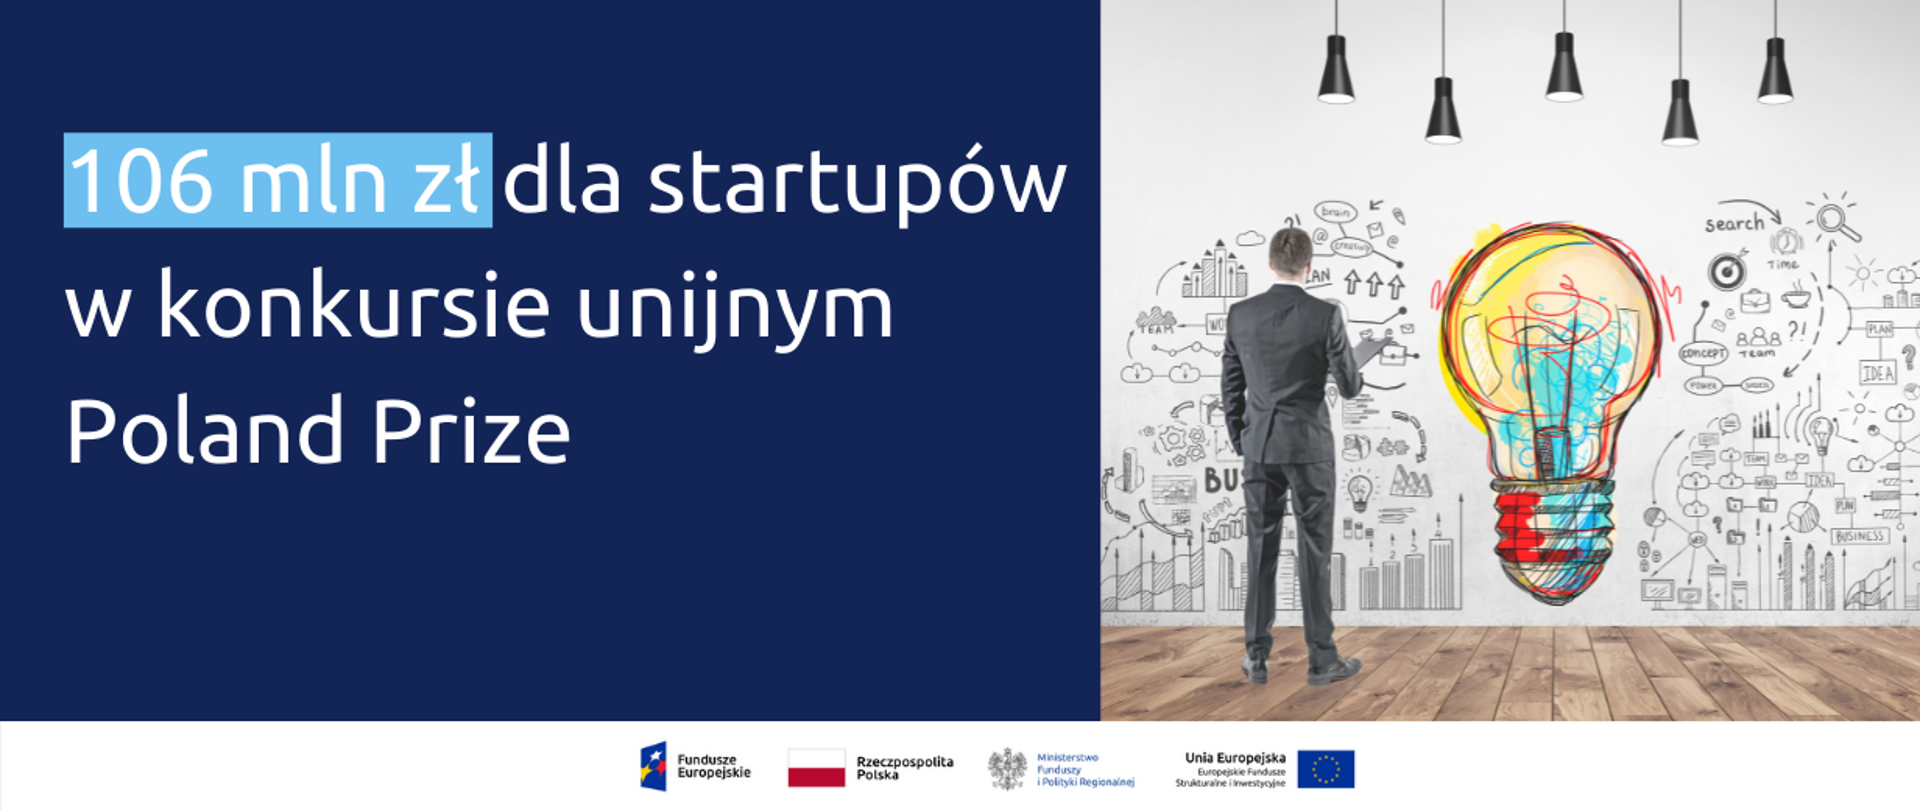 Na grafice po lewej napis "106 mln zł dla startupów w konkursie unijnym Poland Prize", po prawej człowiek ubrany w garnitur stojący przed ścianą z grafikami